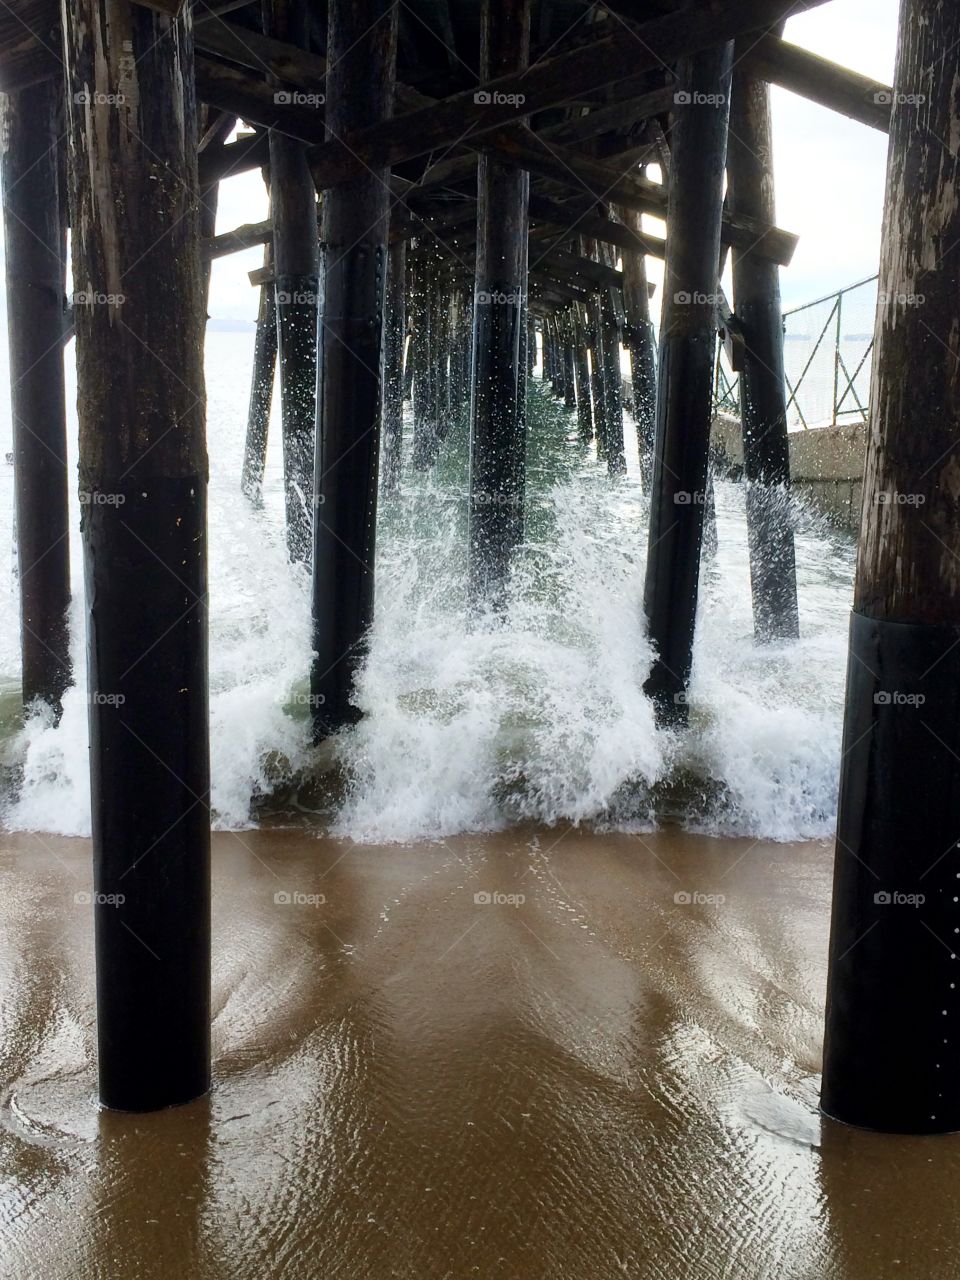 Stormy Pier Pressure. Stormy Pier Pressure, Seal Beach, California 